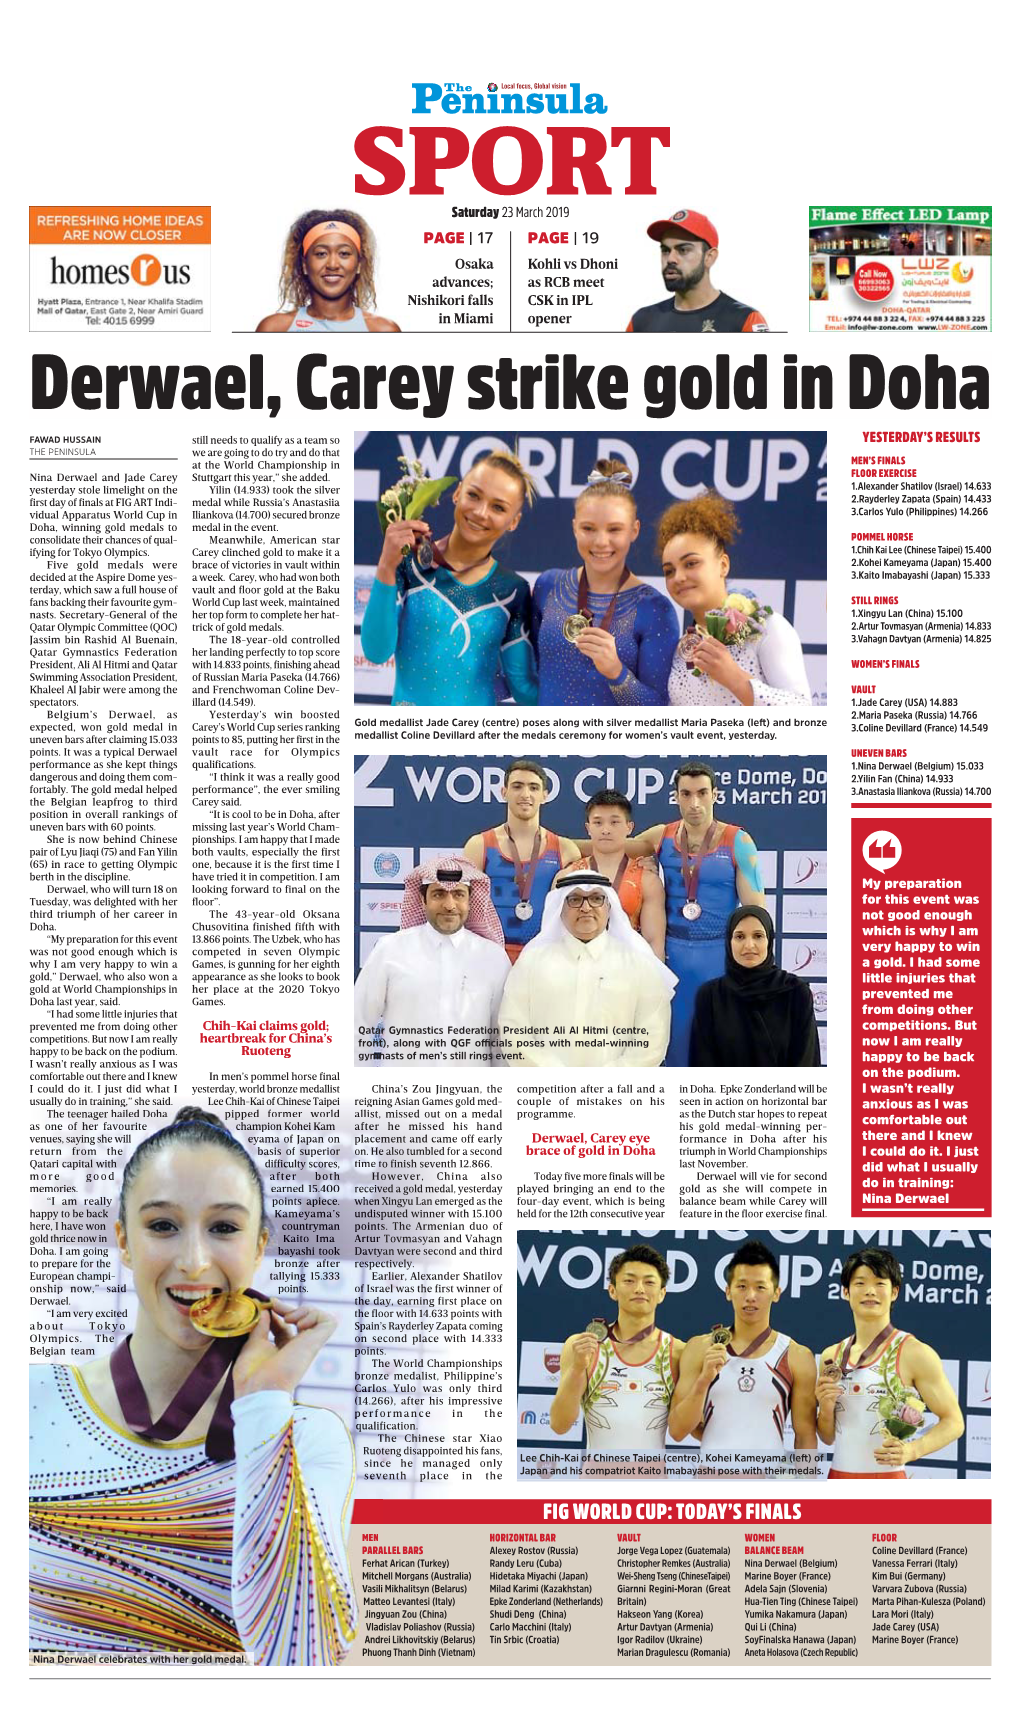 Derwael, Carey Strike Gold in Doha